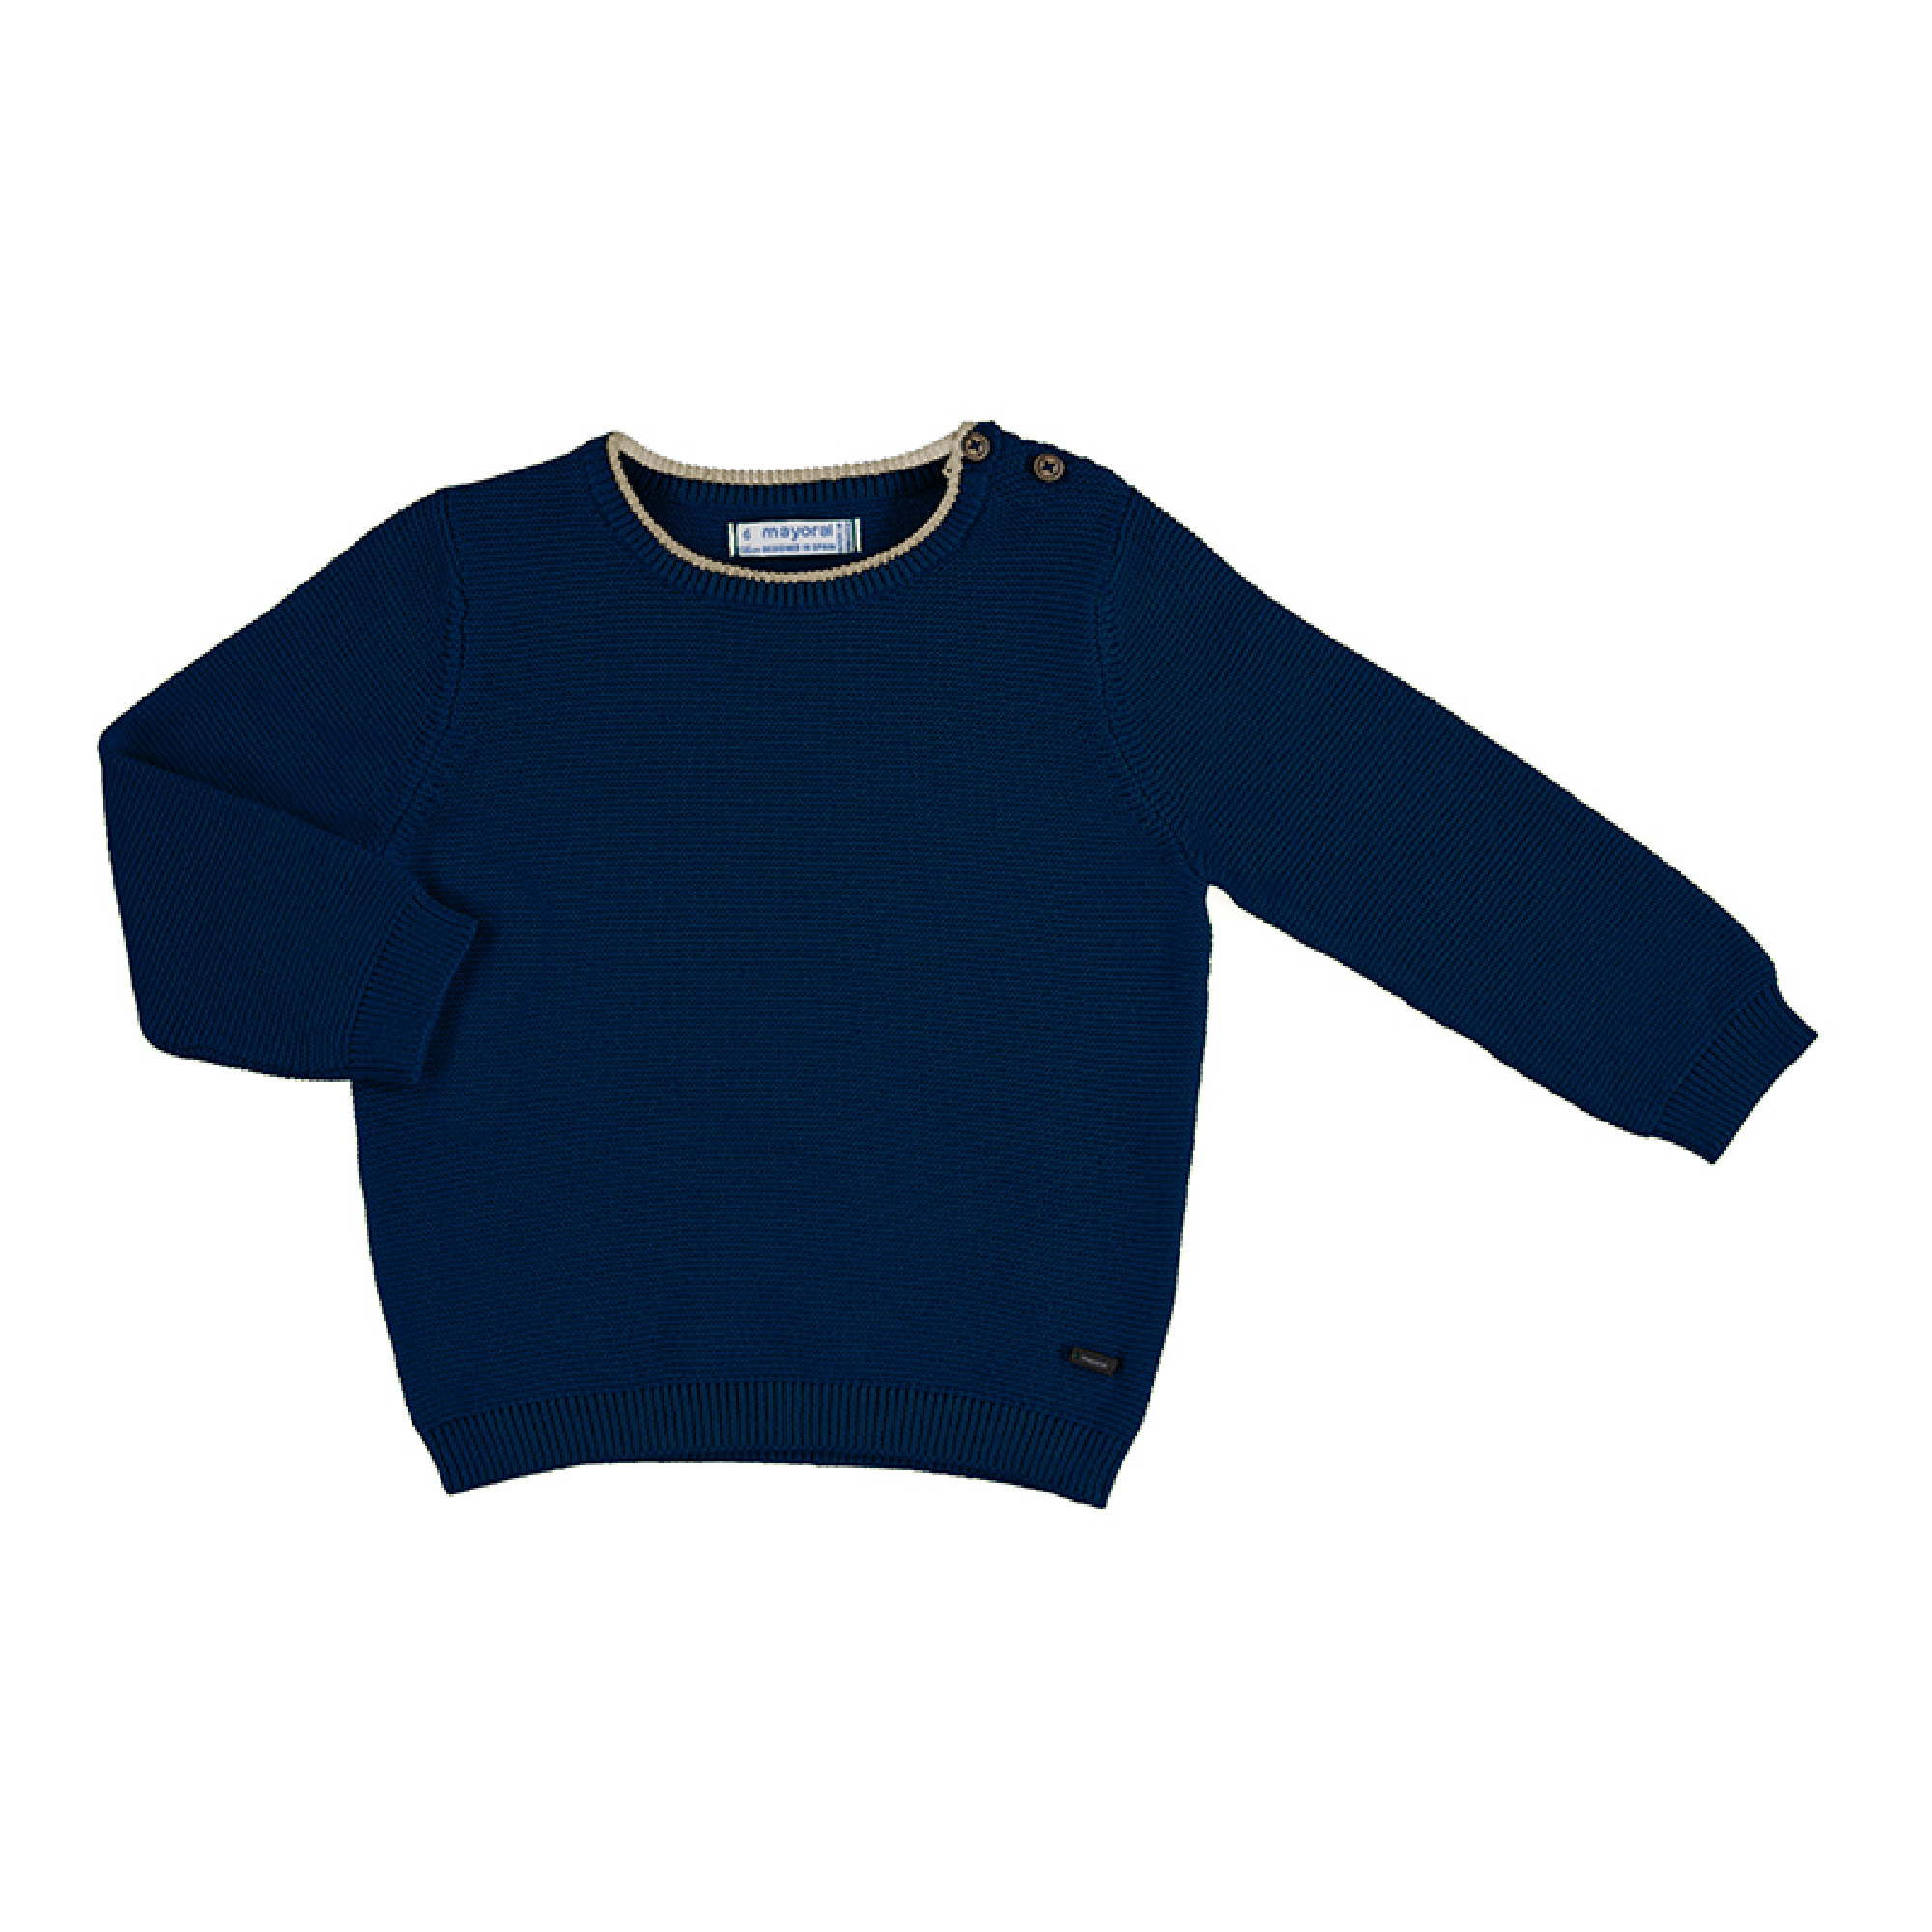 jongens Basic Cotton Sweater van Mayoral in de kleur Donkerblauw in maat 86.